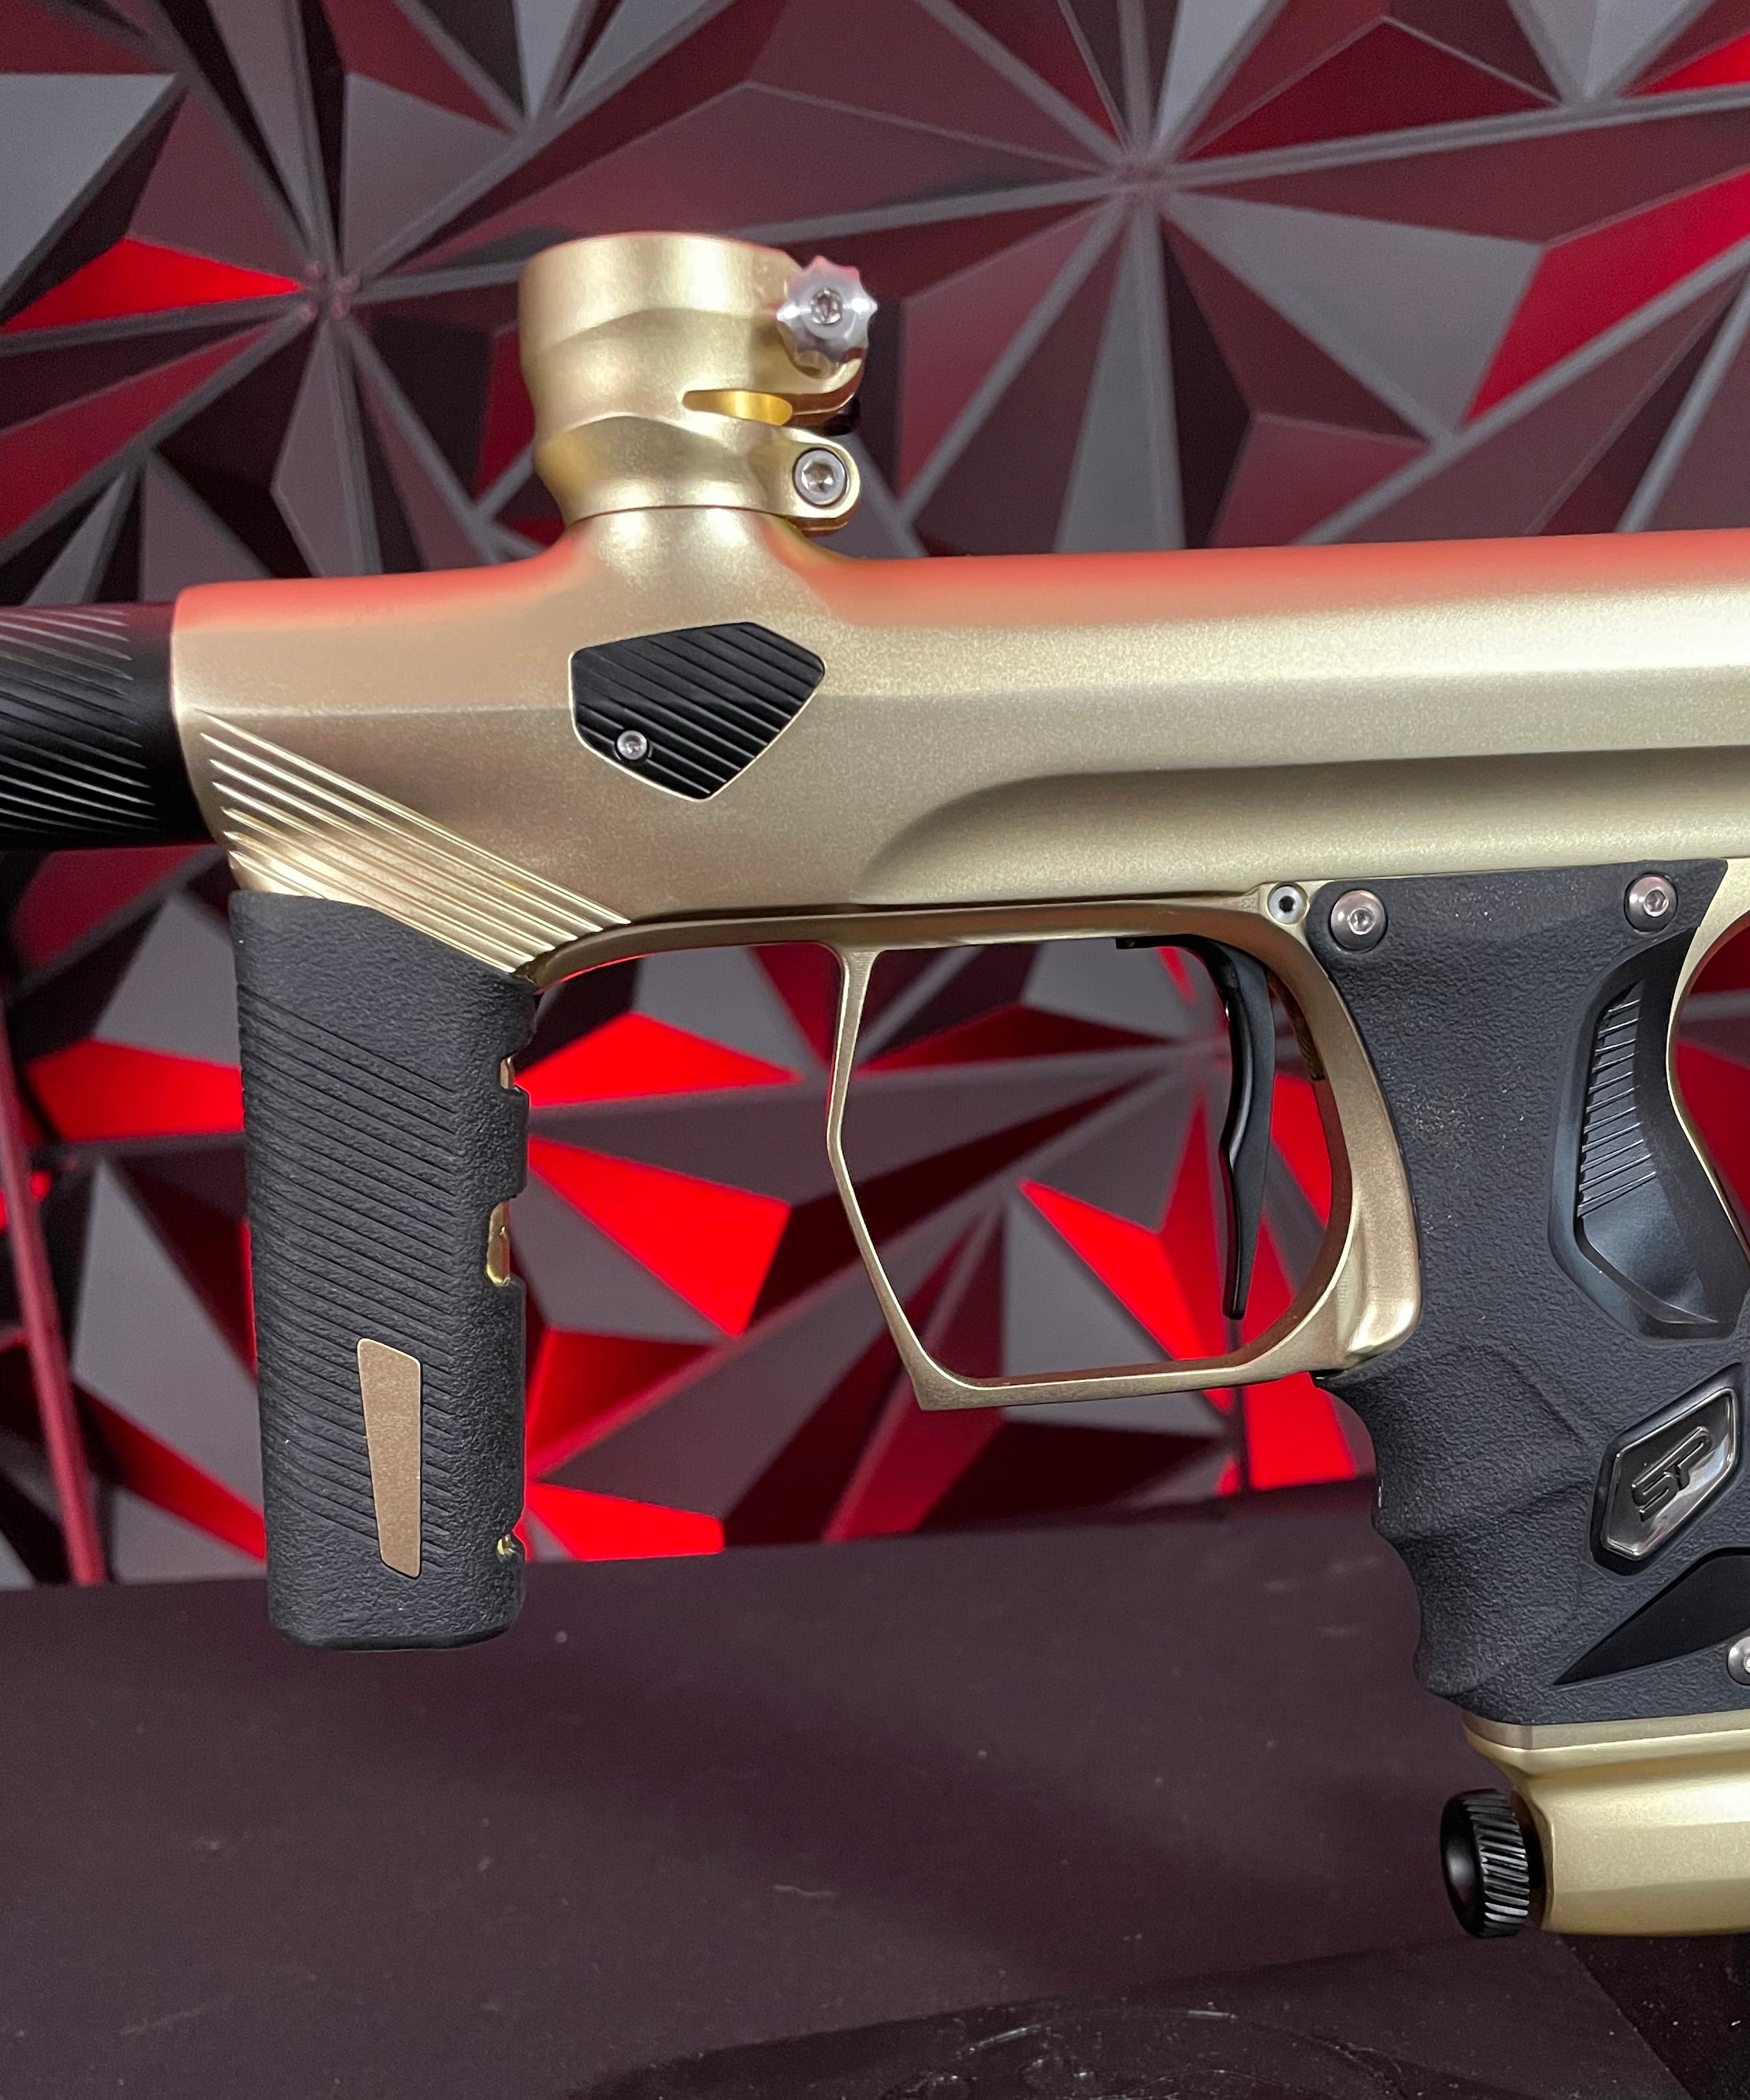 Used Shocker Era Paintball Gun - Dust Gold